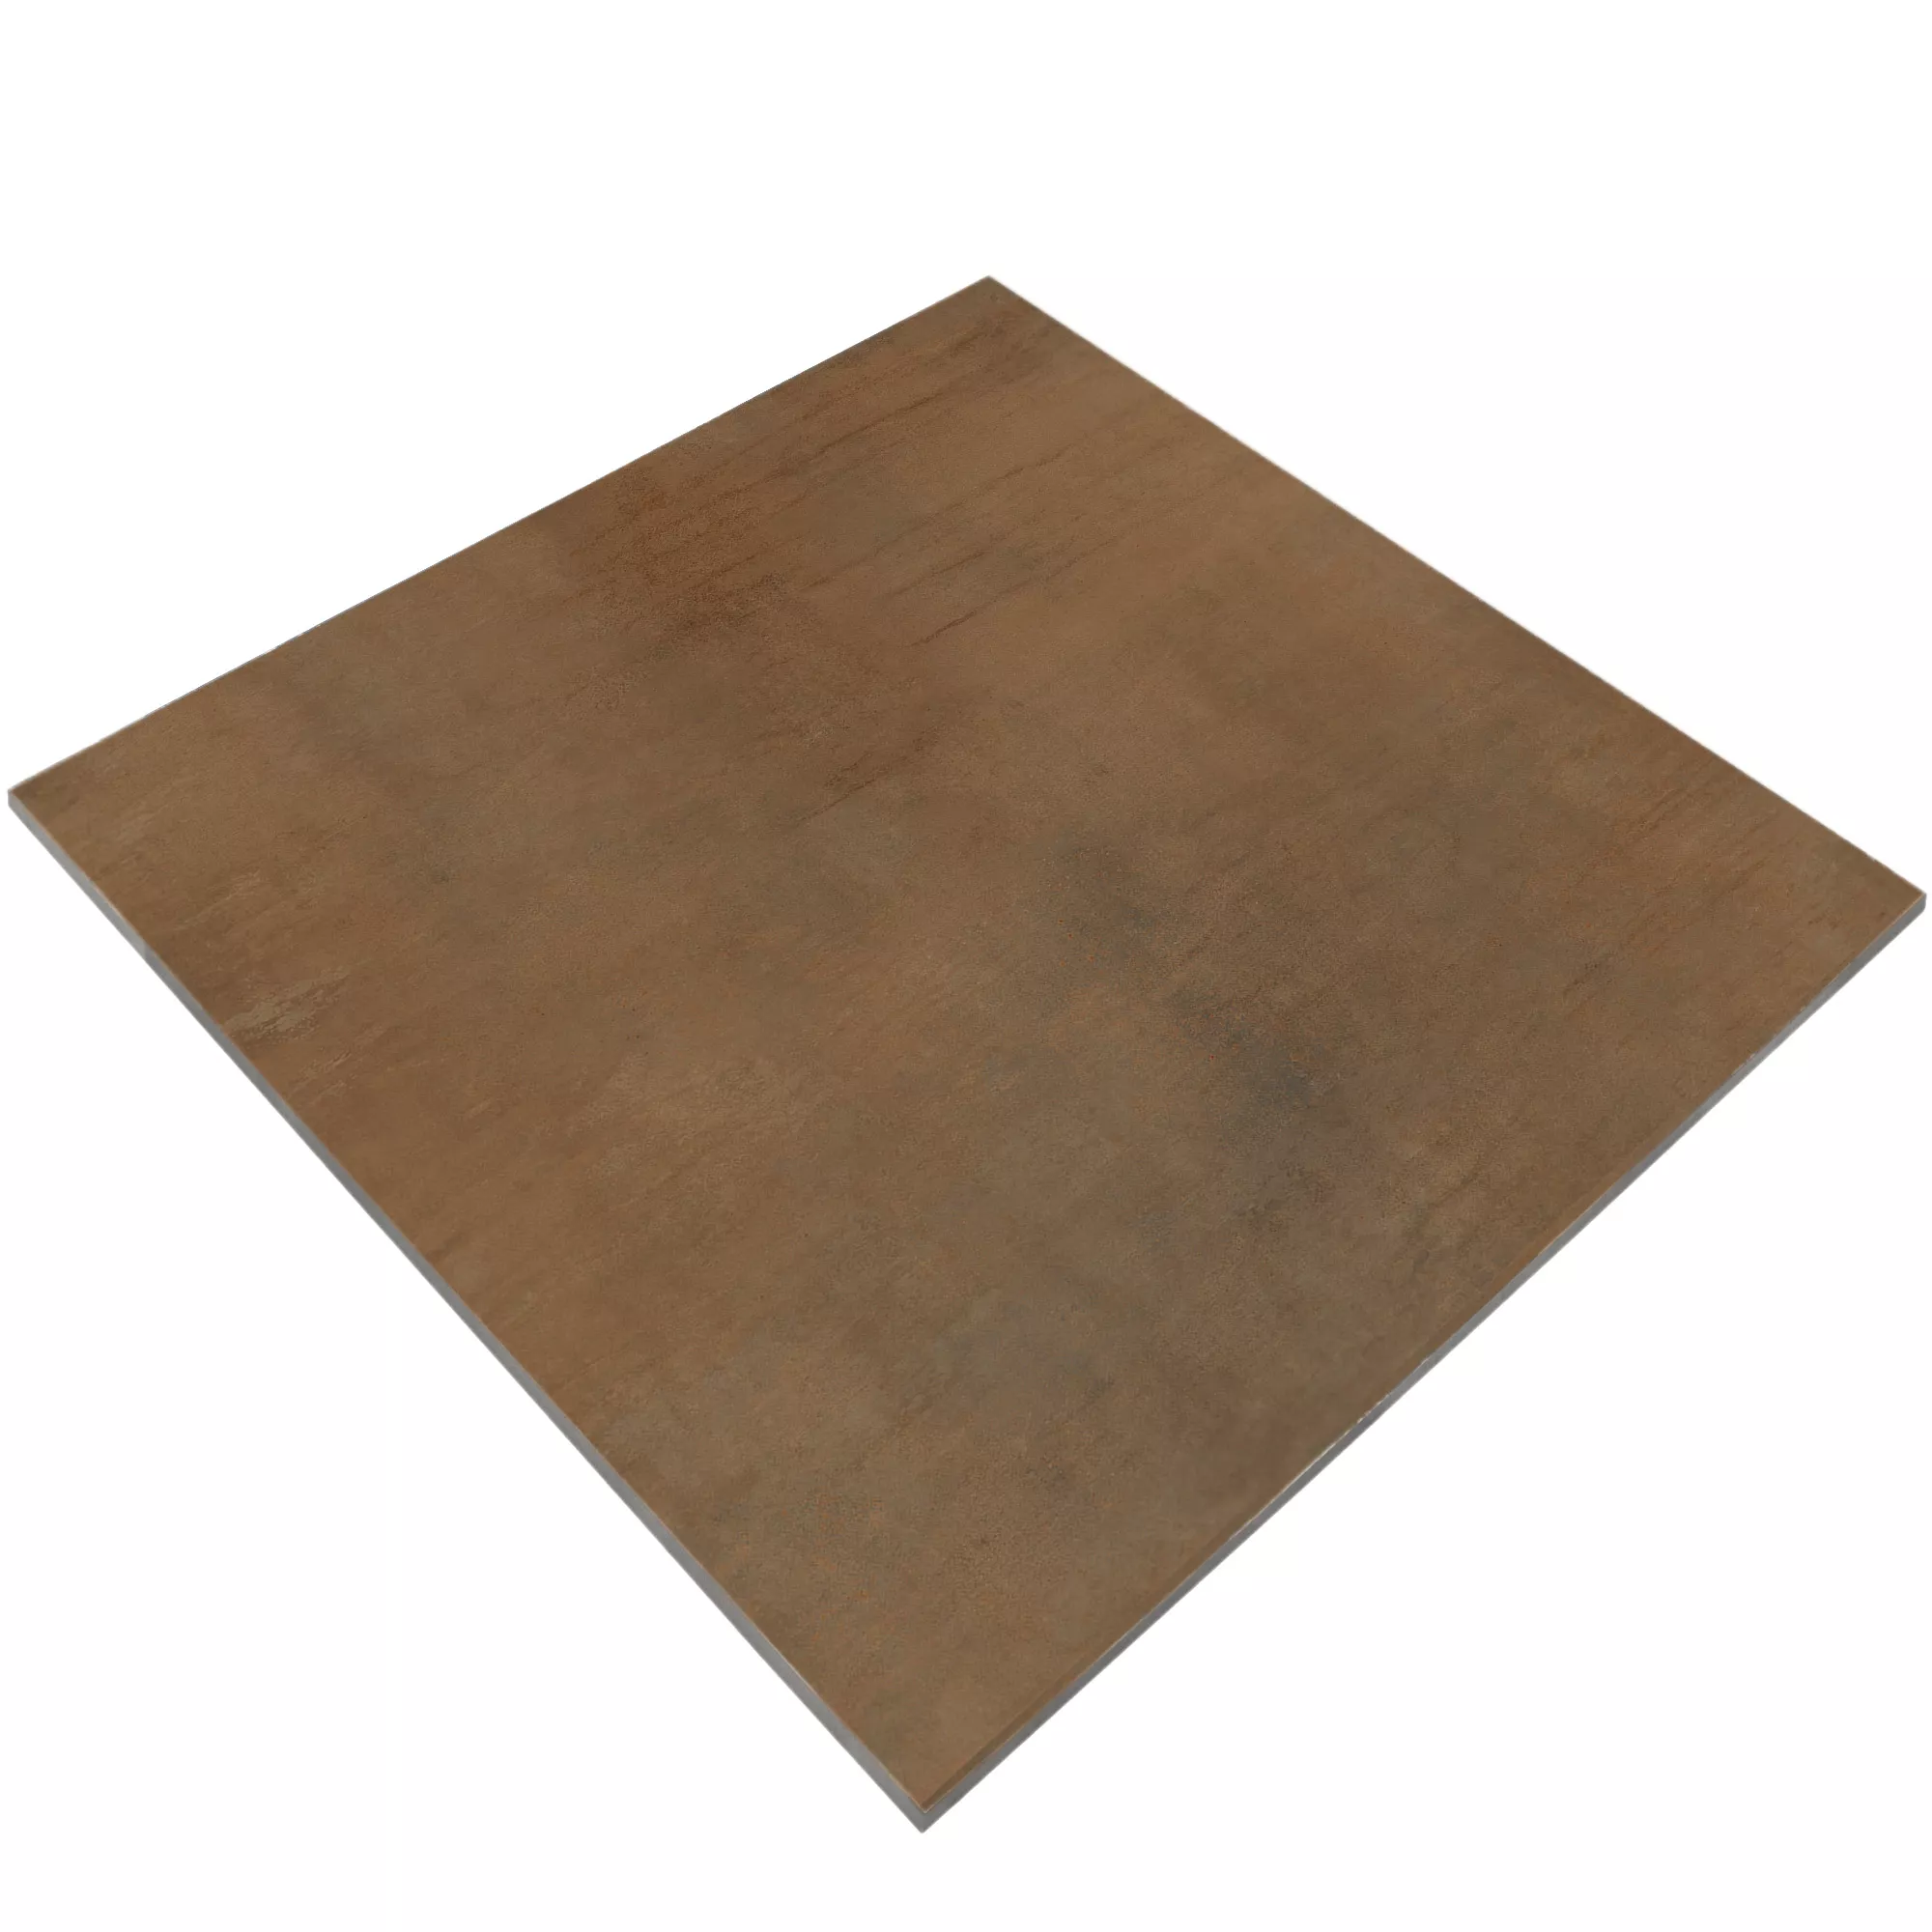 Sample Floor Tiles Tycoon Beton Optic R10 Brown 120x120cm